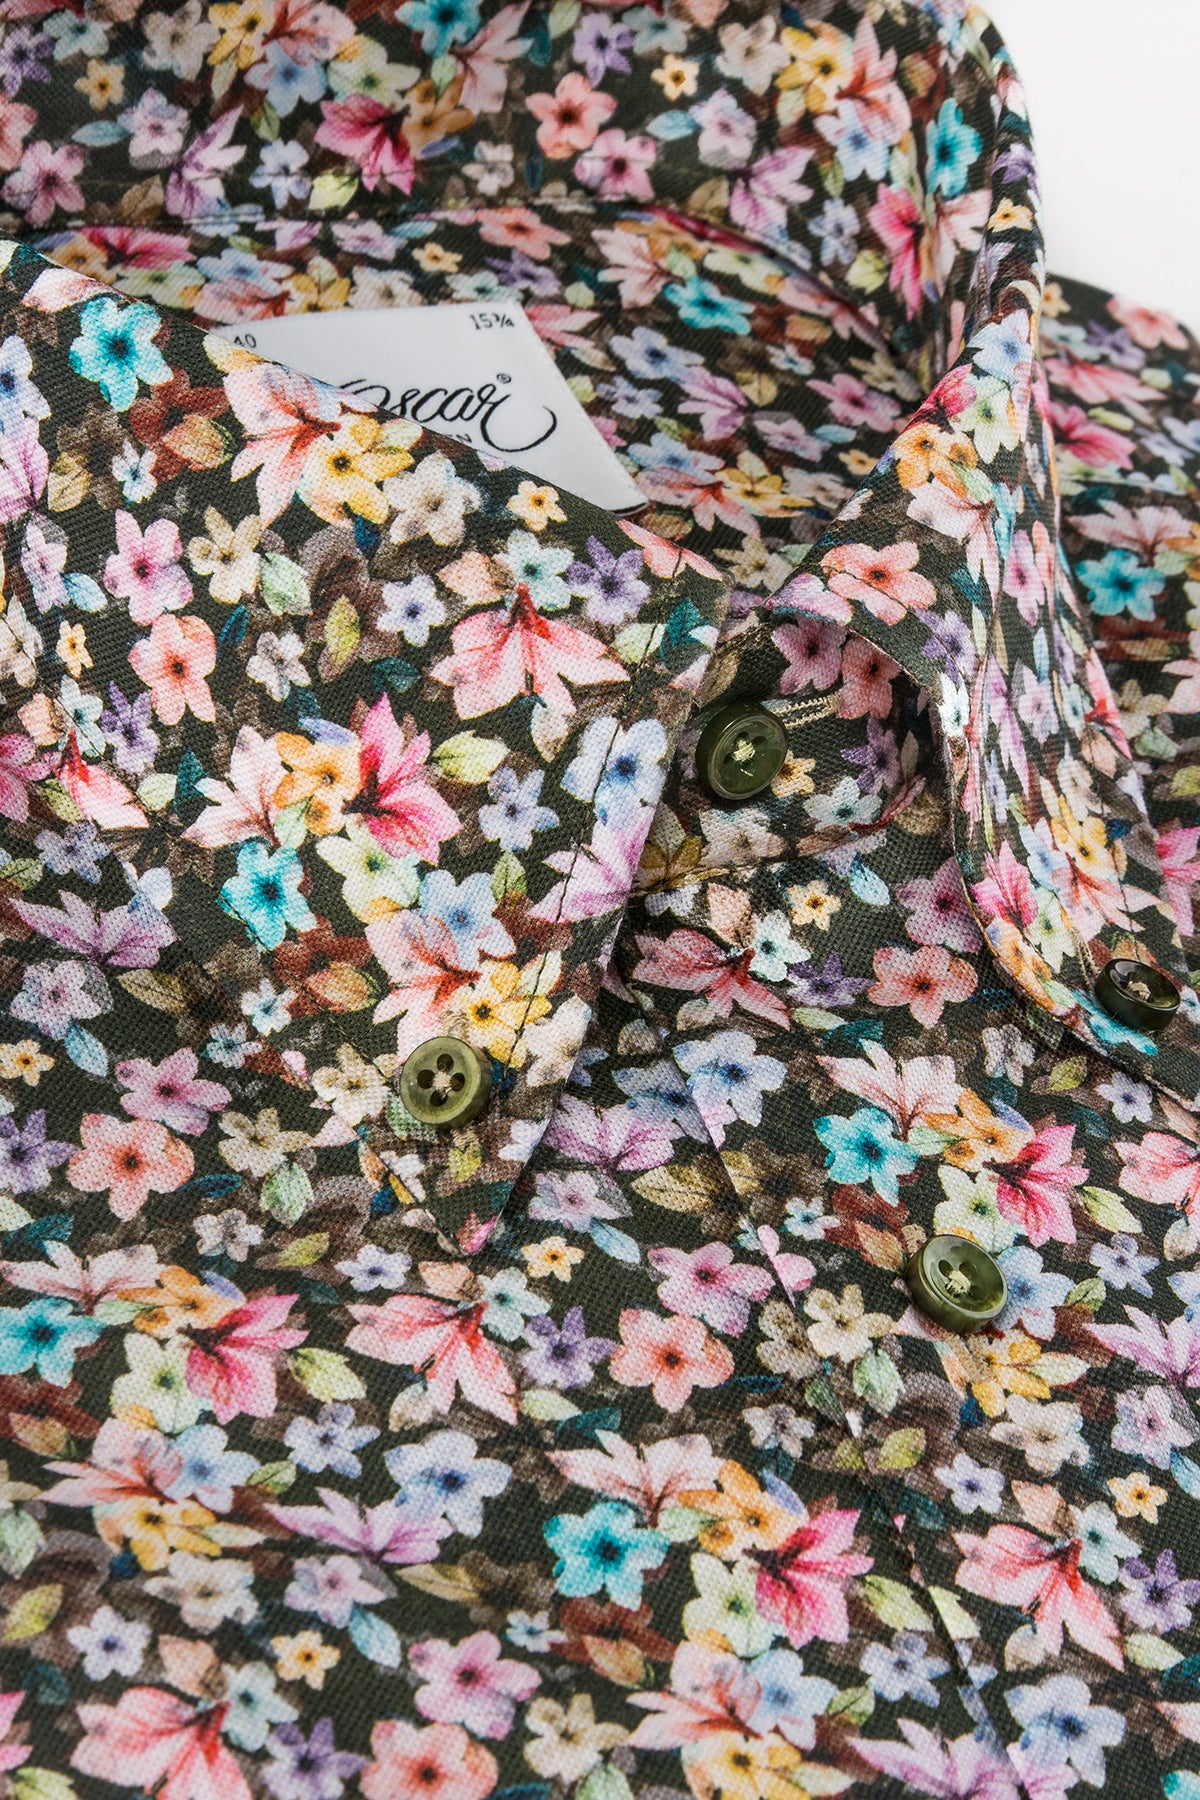 Flower printed button down regular fit shirt